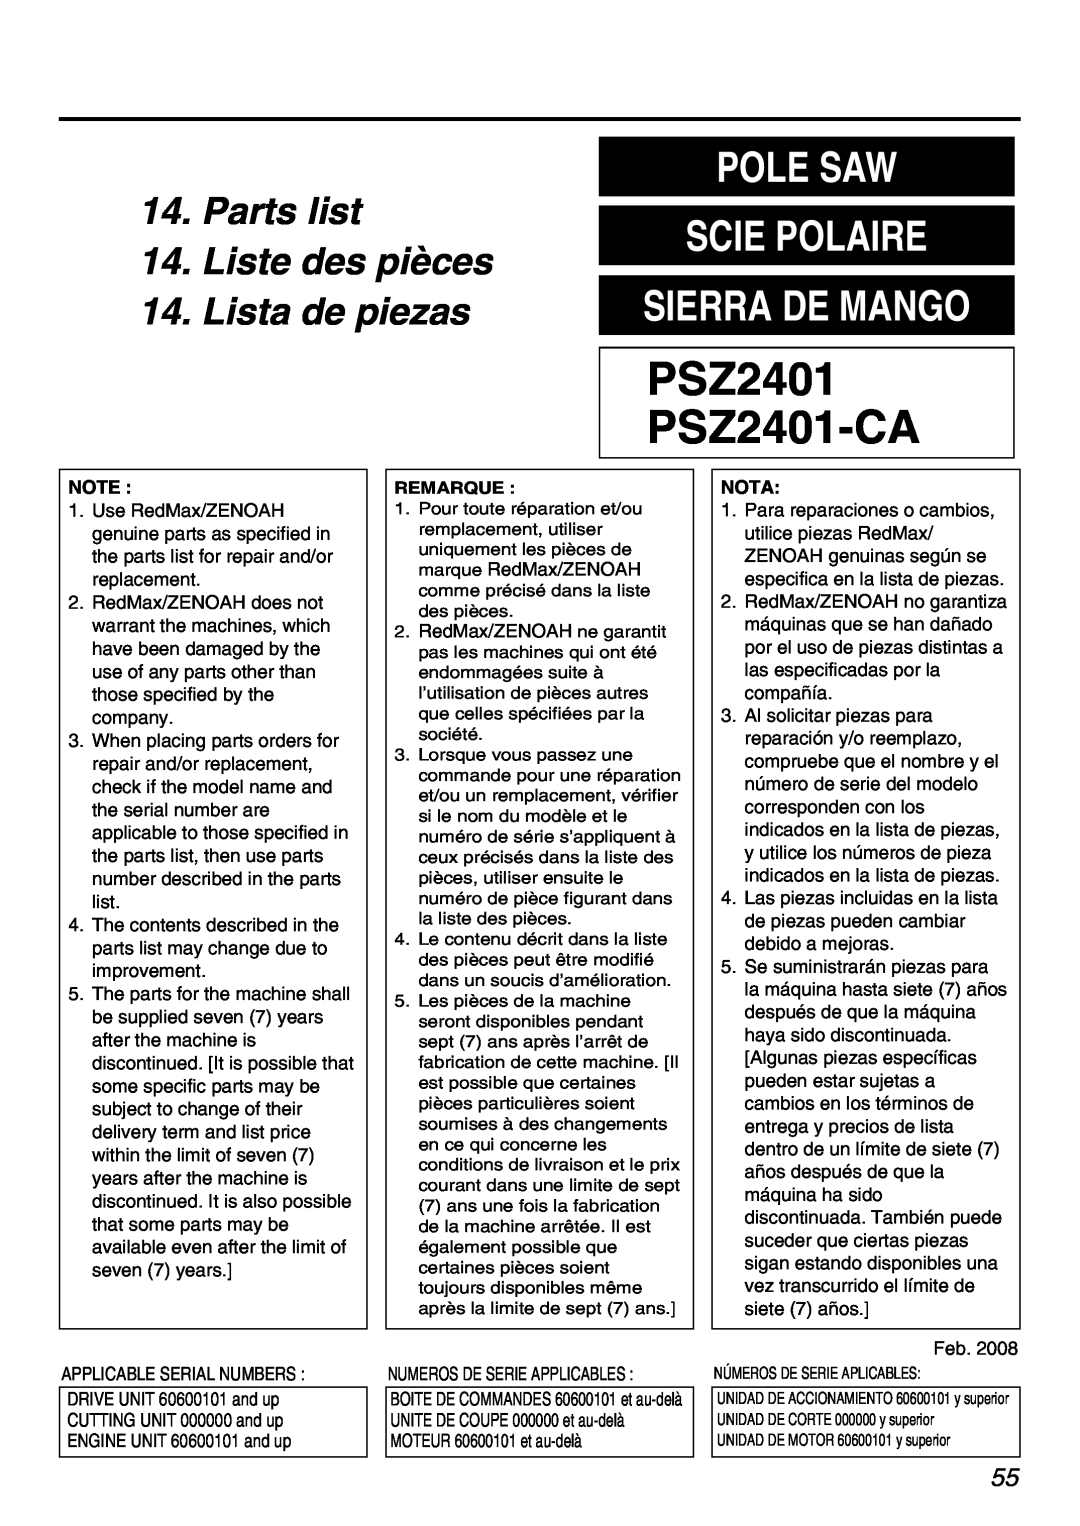 Zenoah Parts list 14. Liste des pièces 14. Lista de piezas, PSZ2401 PSZ2401-CA, Pole Saw Scie Polaire Sierra De Mango 